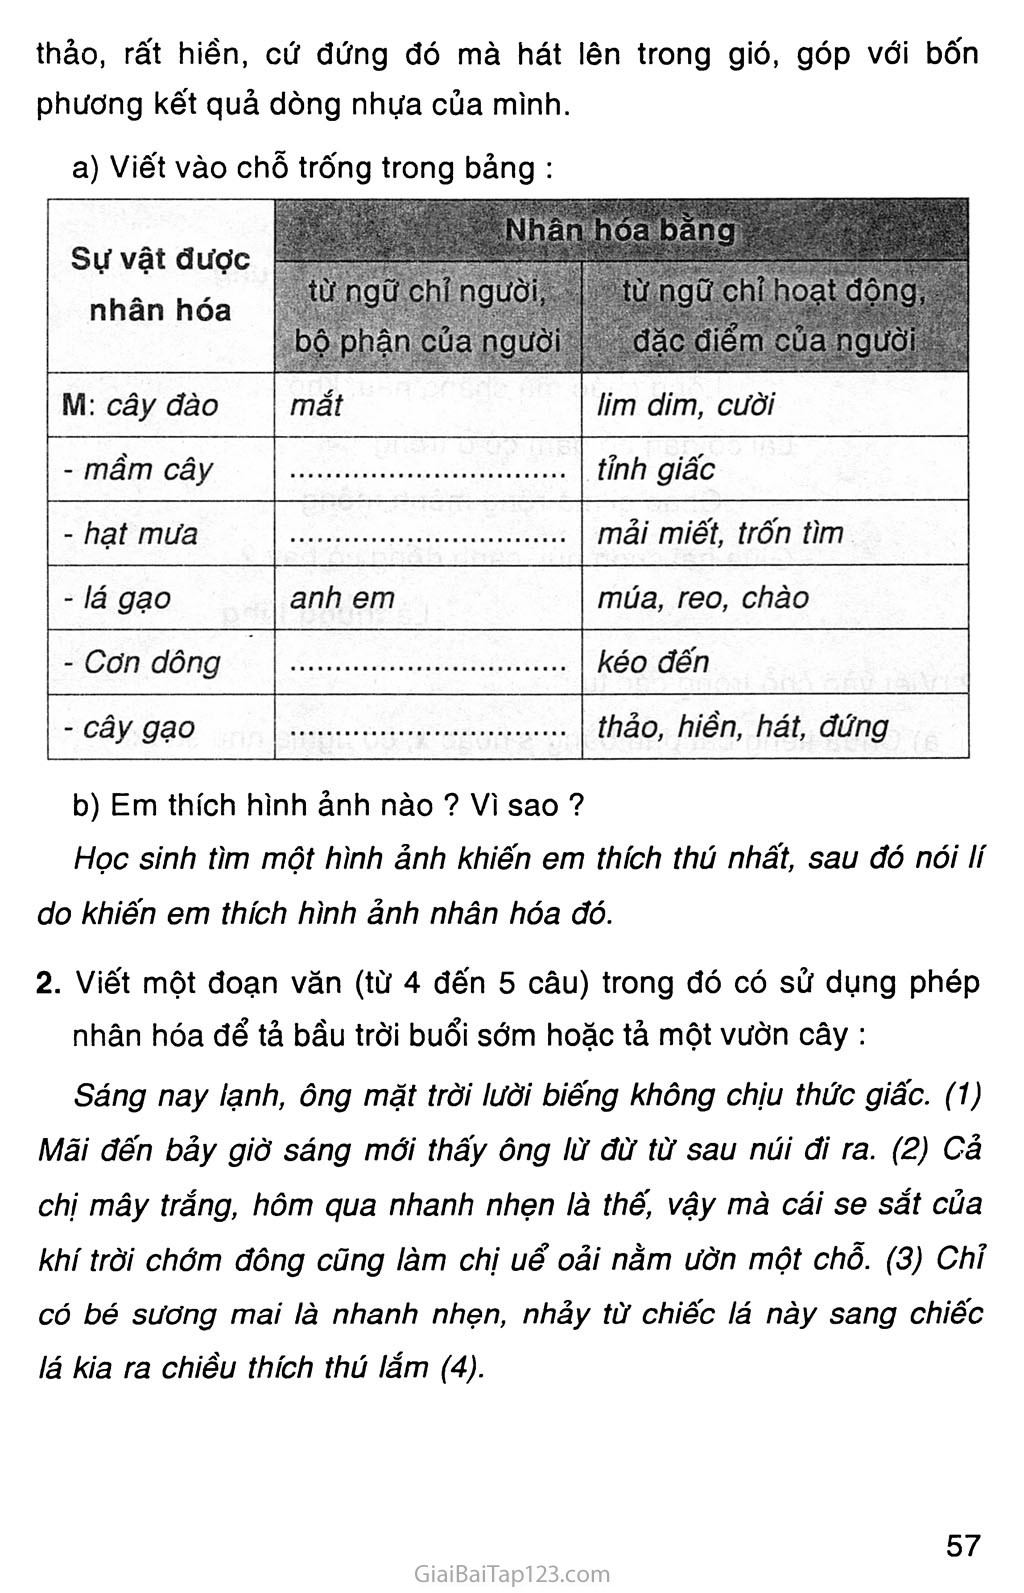 Giải vở bài tập Tiếng Việt lớp 3 tập 2 Tuần 33